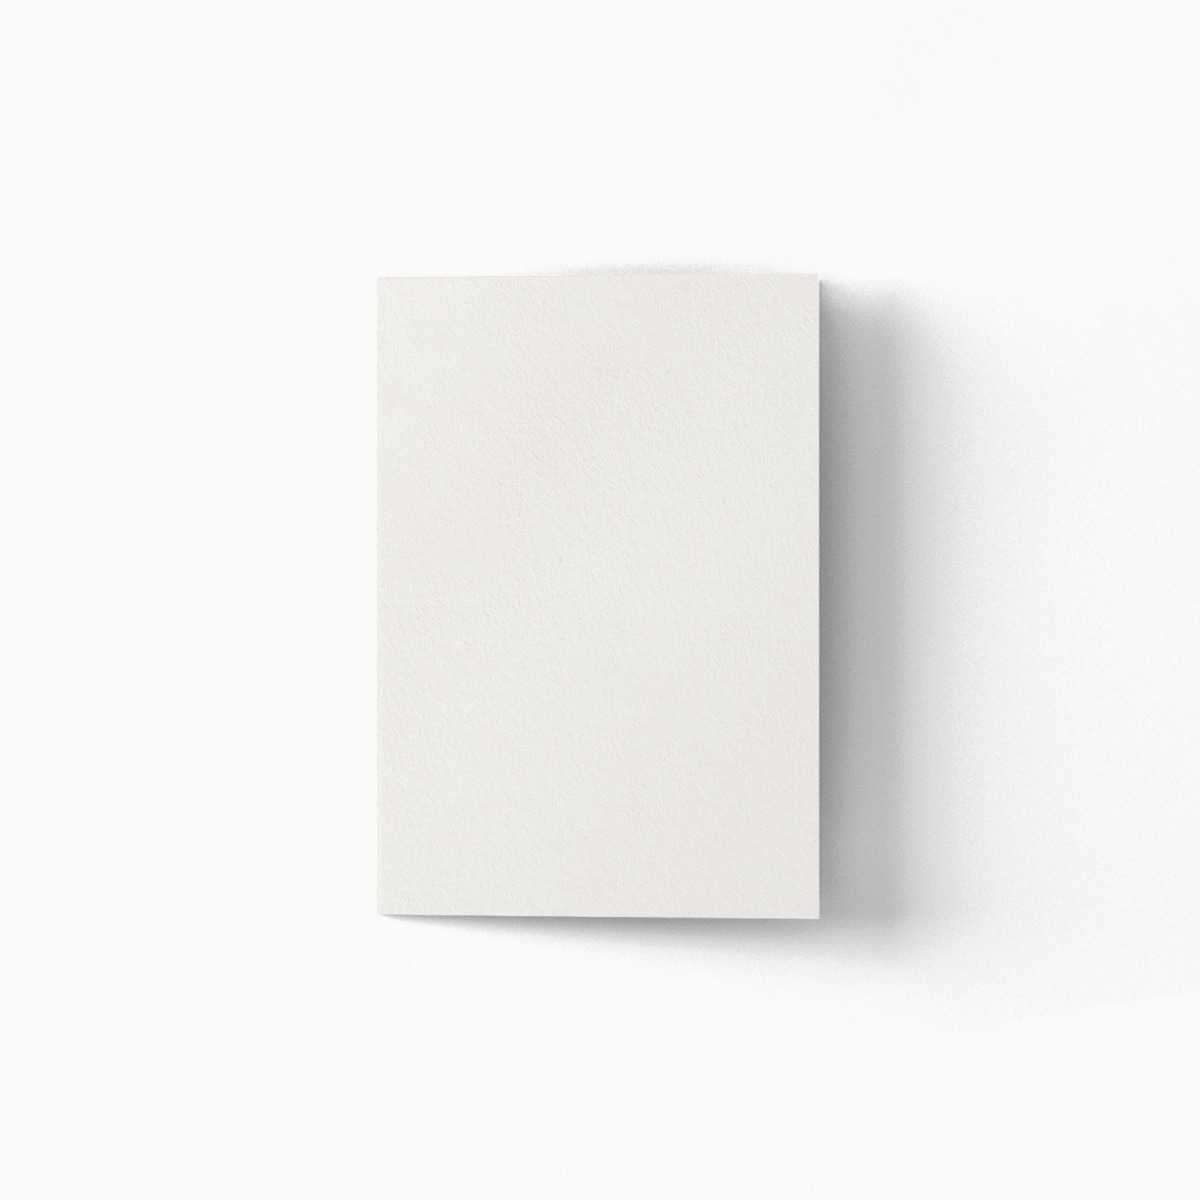 a blank folded card